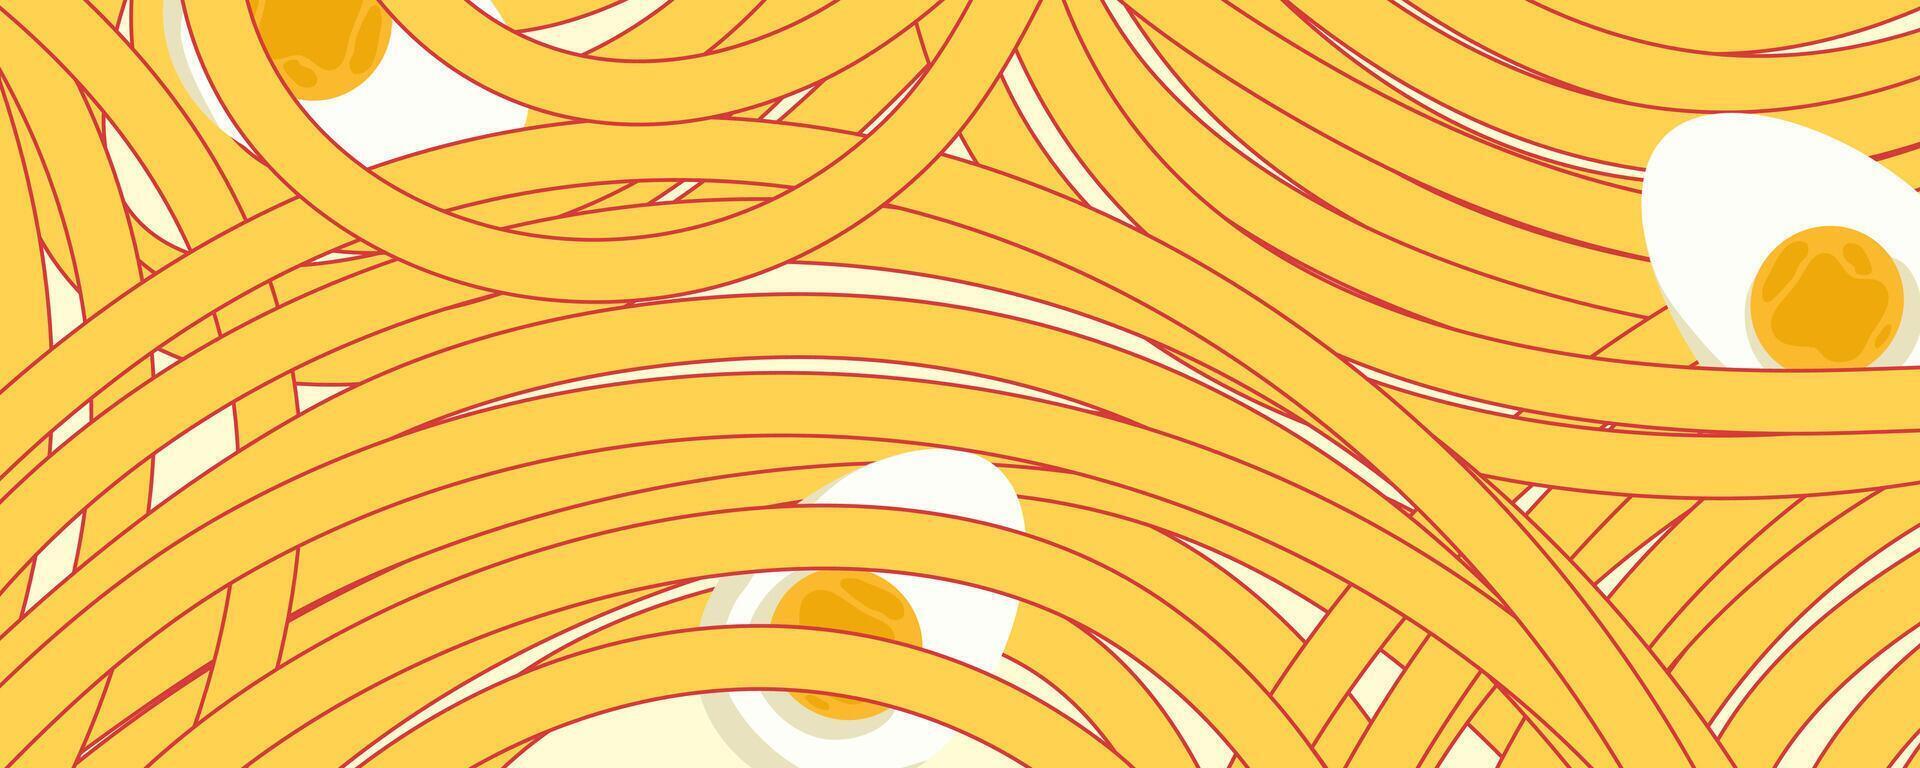 spaghetto ramen modello con uovo sfondo. pasta cibo struttura spaghetti geometrico. astratto ramen ornamento. piatto vettore illustrazione. onda struttura sfondo